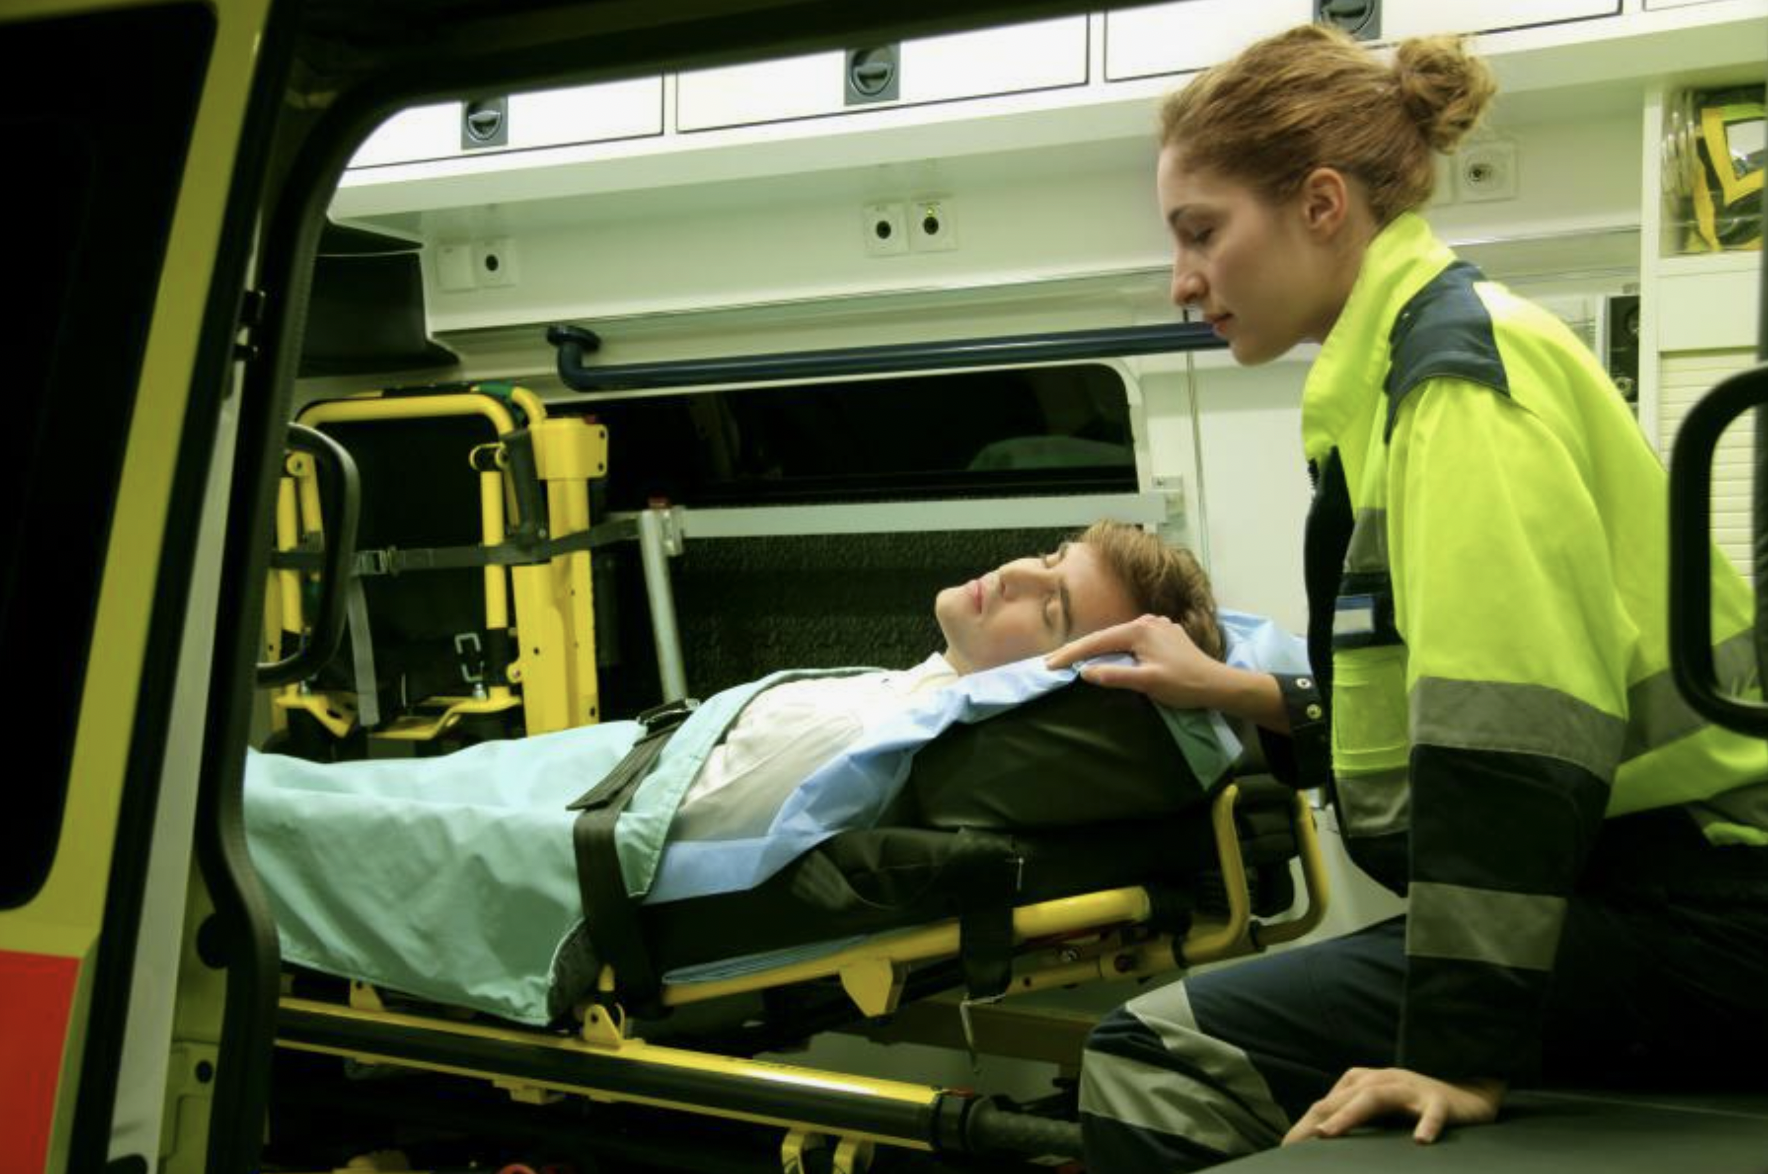 Hombre inconsciente en una ambulancia | Fuente: Shutterstock